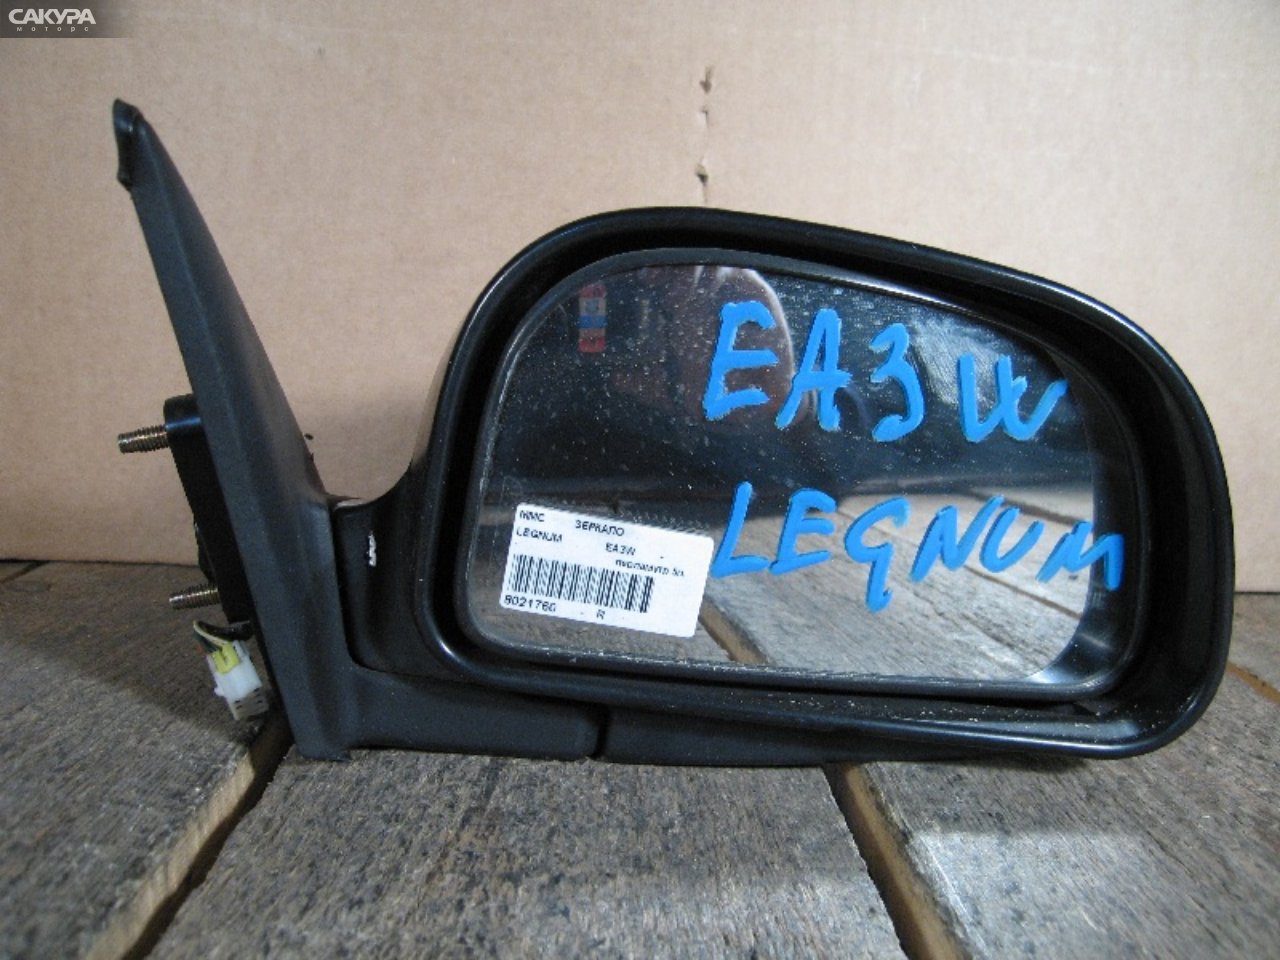 Зеркало боковое правое Mitsubishi Legnum EA3W: купить в Сакура Абакан.